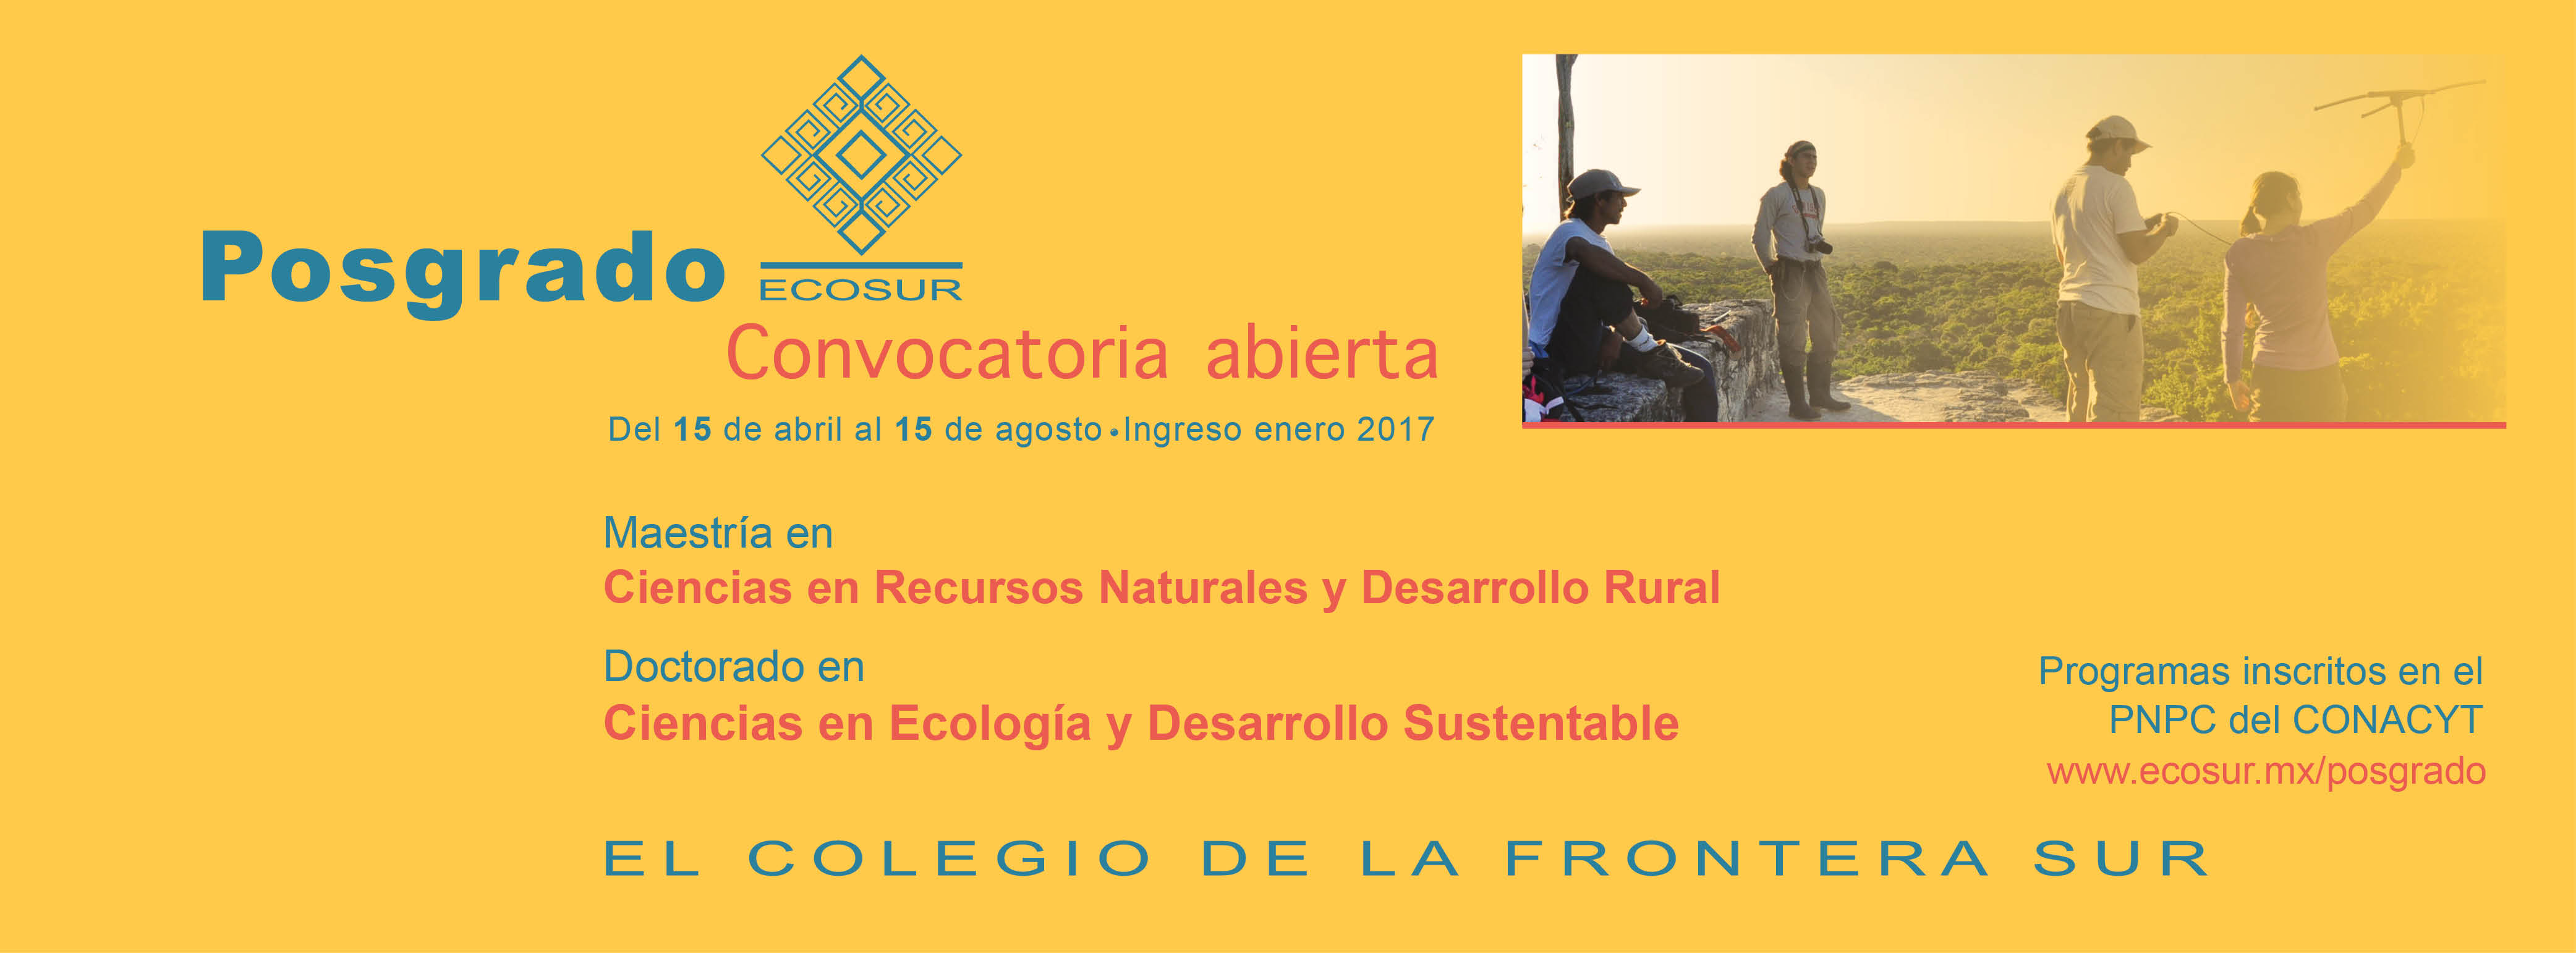 Ecosur abre su Convocatoria de Posgrado 2017